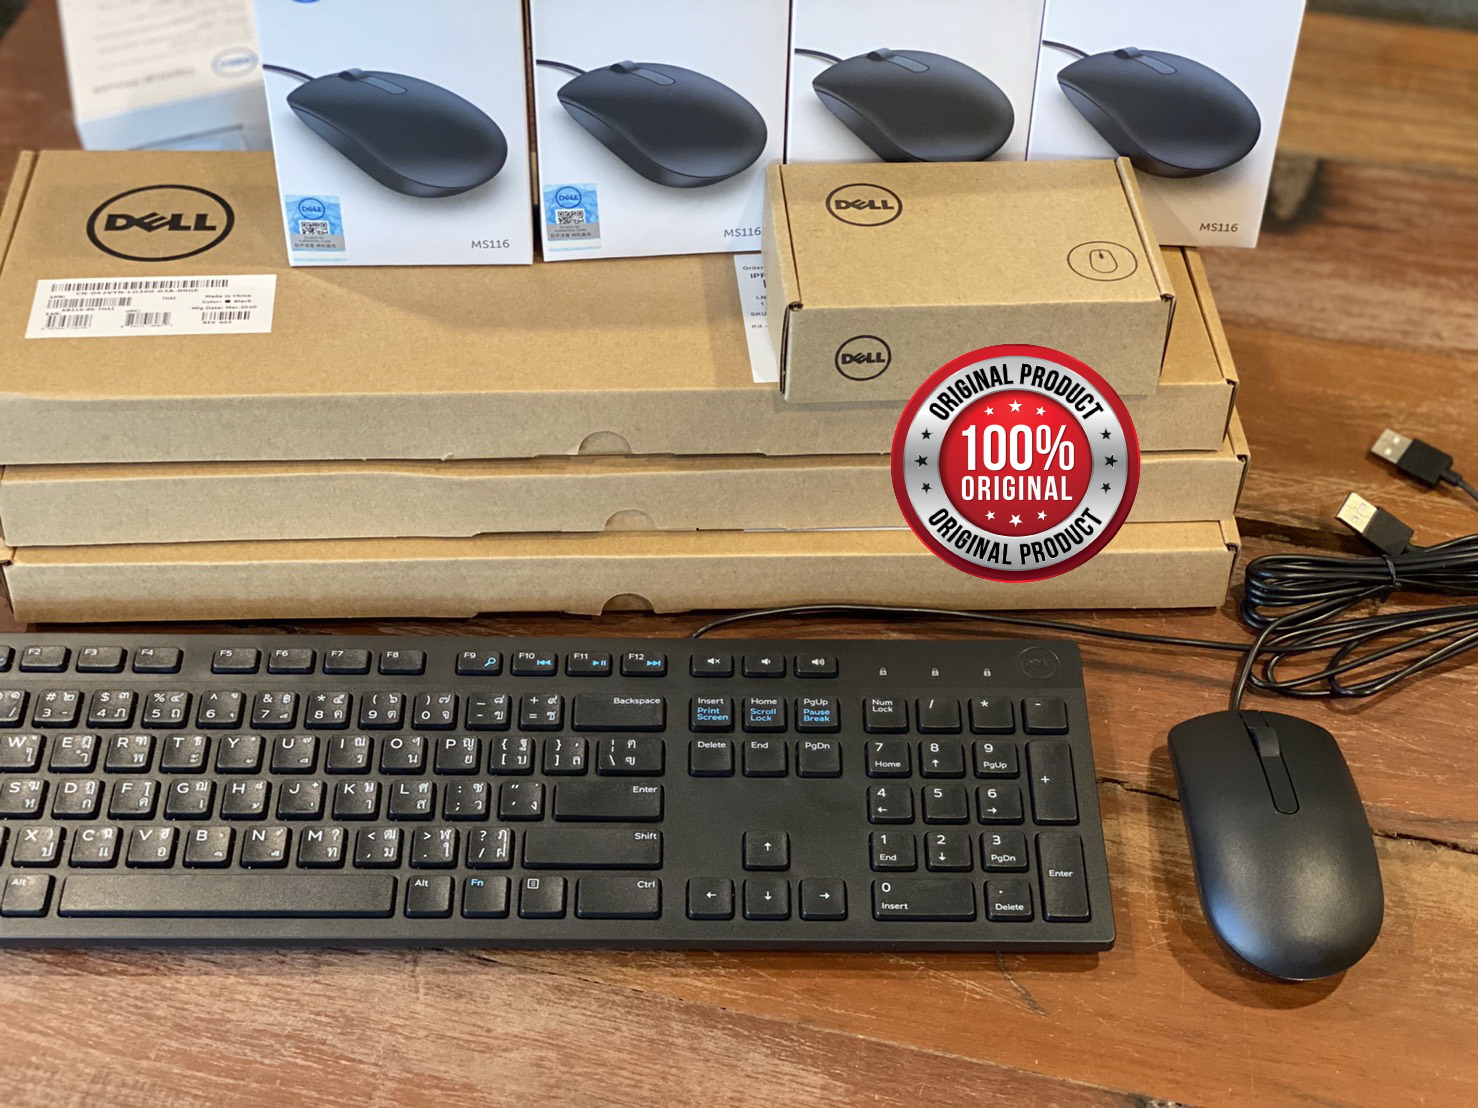 แพคคู่สุดคุ้ม= Dell KB216 Multimedia Keyboard ไทย-English + Mouse Dell Optical Mouse- MS116 ( BLACK) ของแท้ 100%